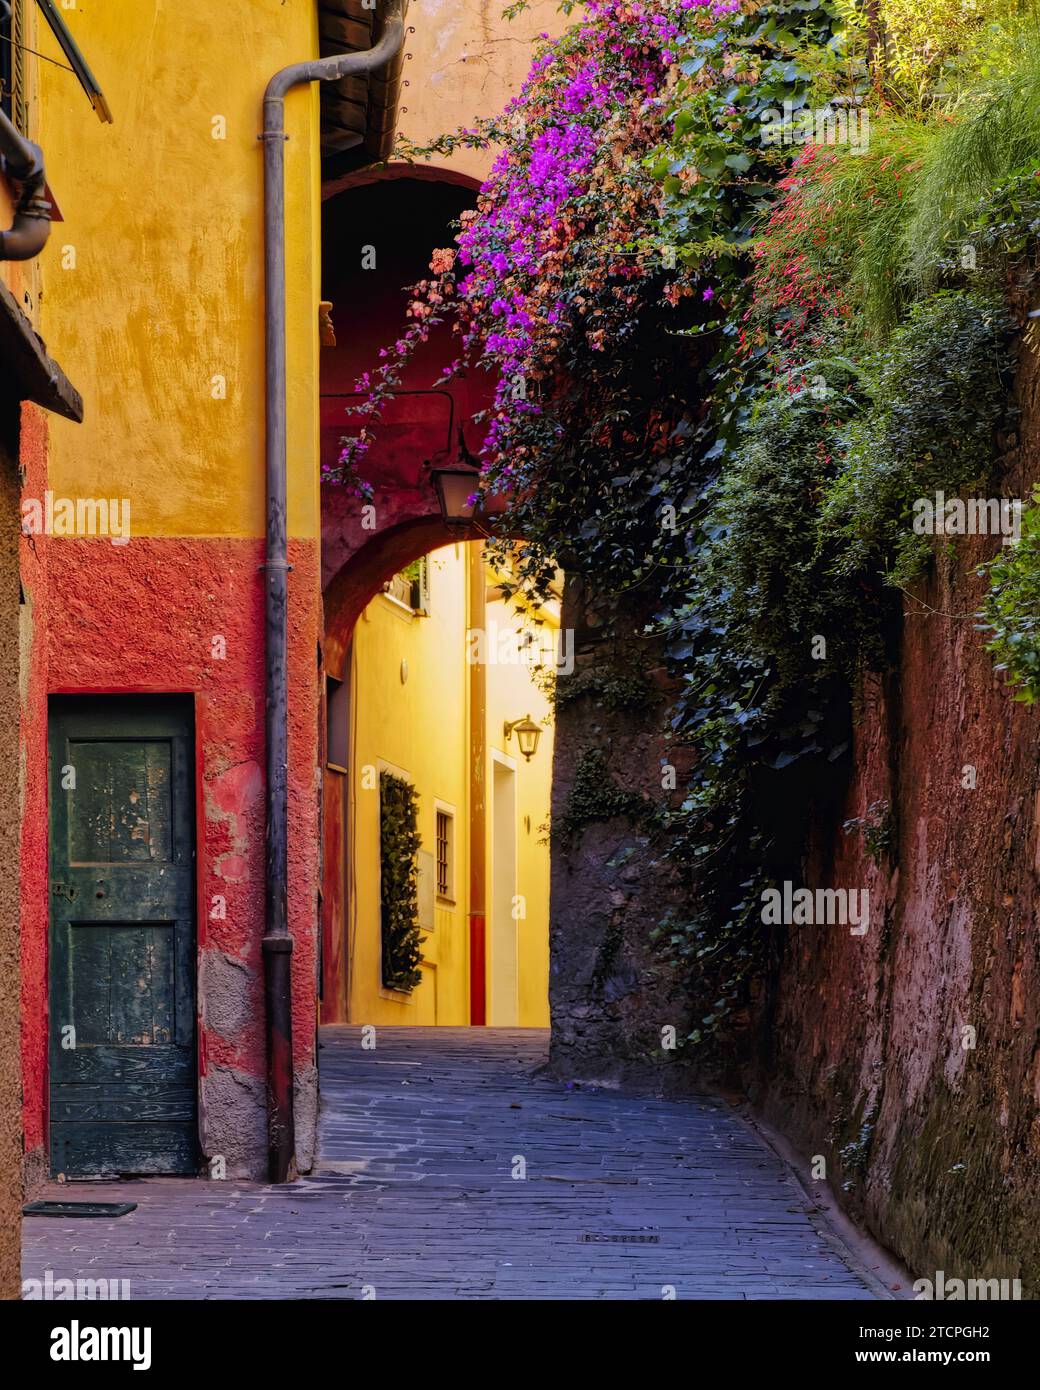 Allée colorée avec fleurs de Bougainvillea, Portofino, Ligurie, Italie Banque D'Images